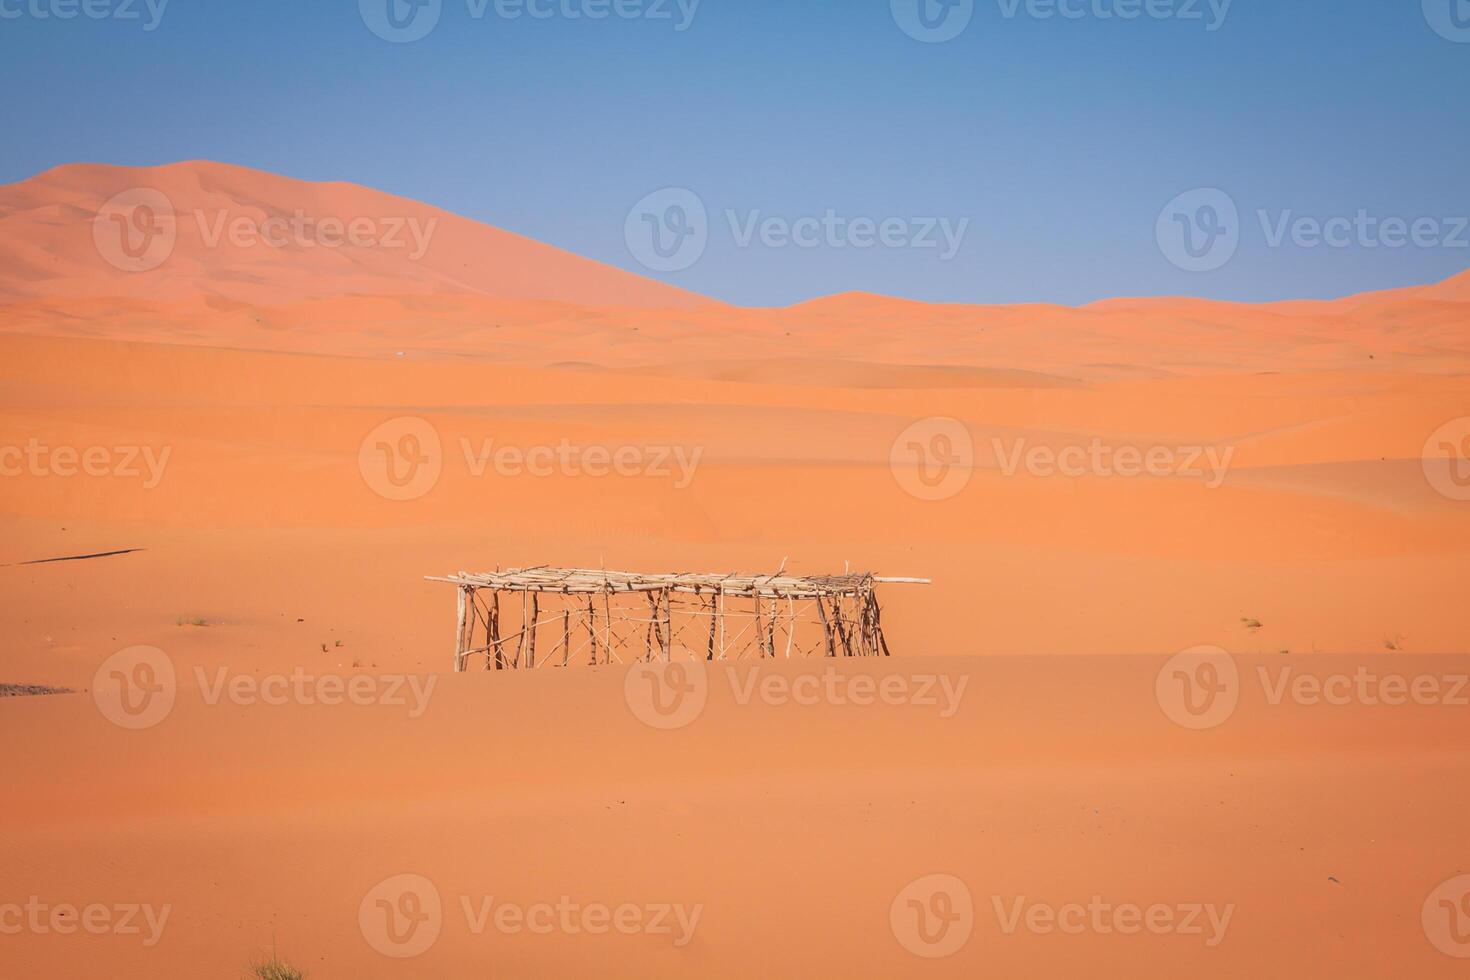 zandduinen in de Saharawoestijn, Merzouga, Marokko foto